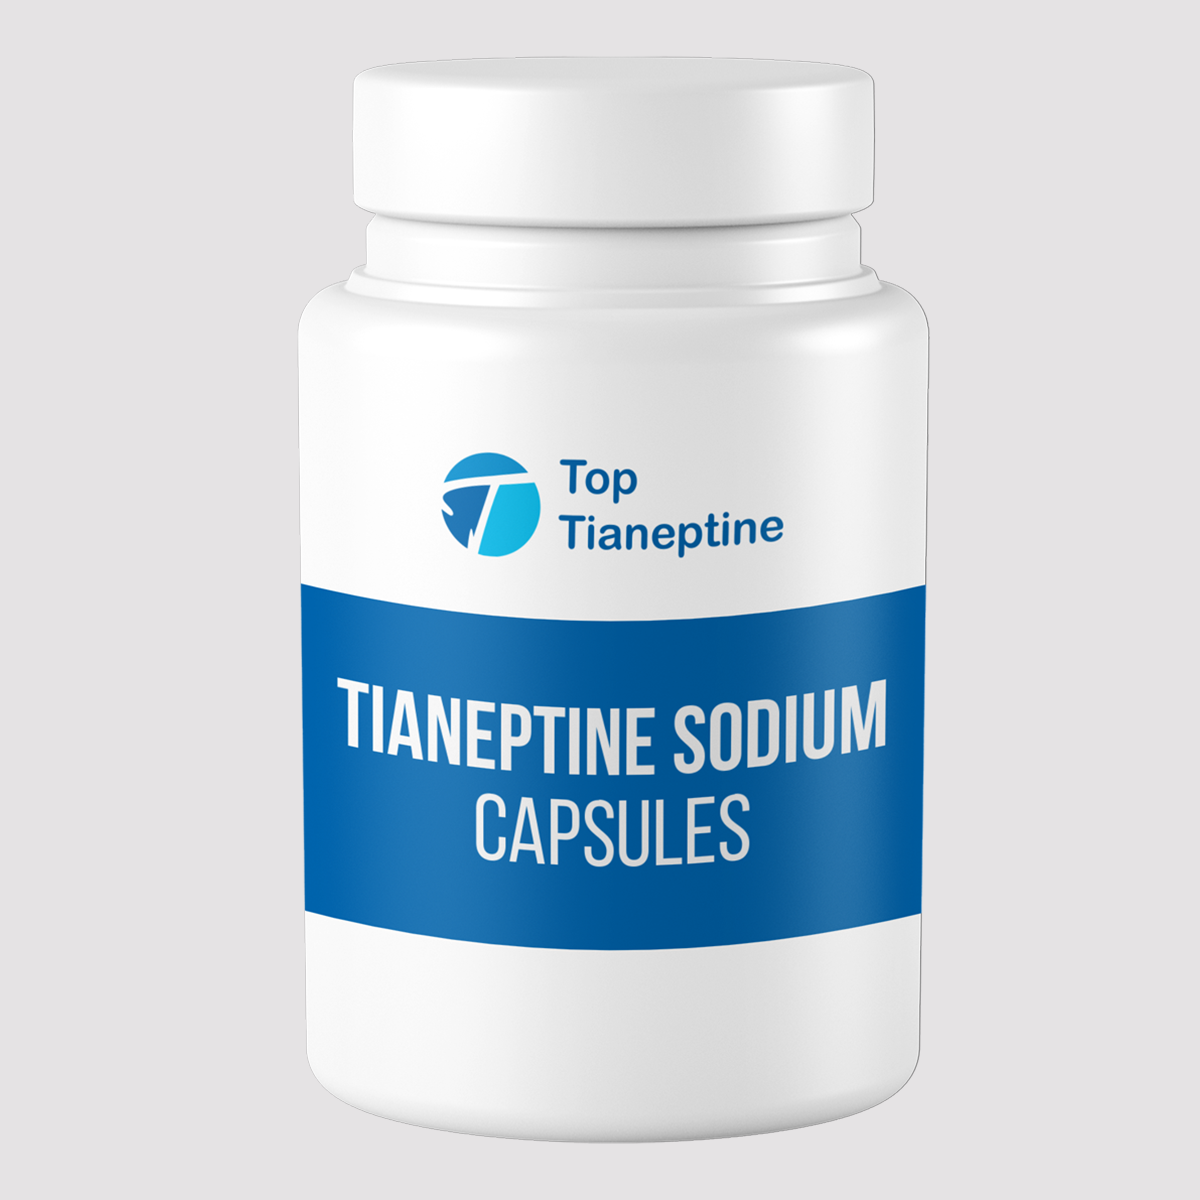 Tianeptine Sodium.